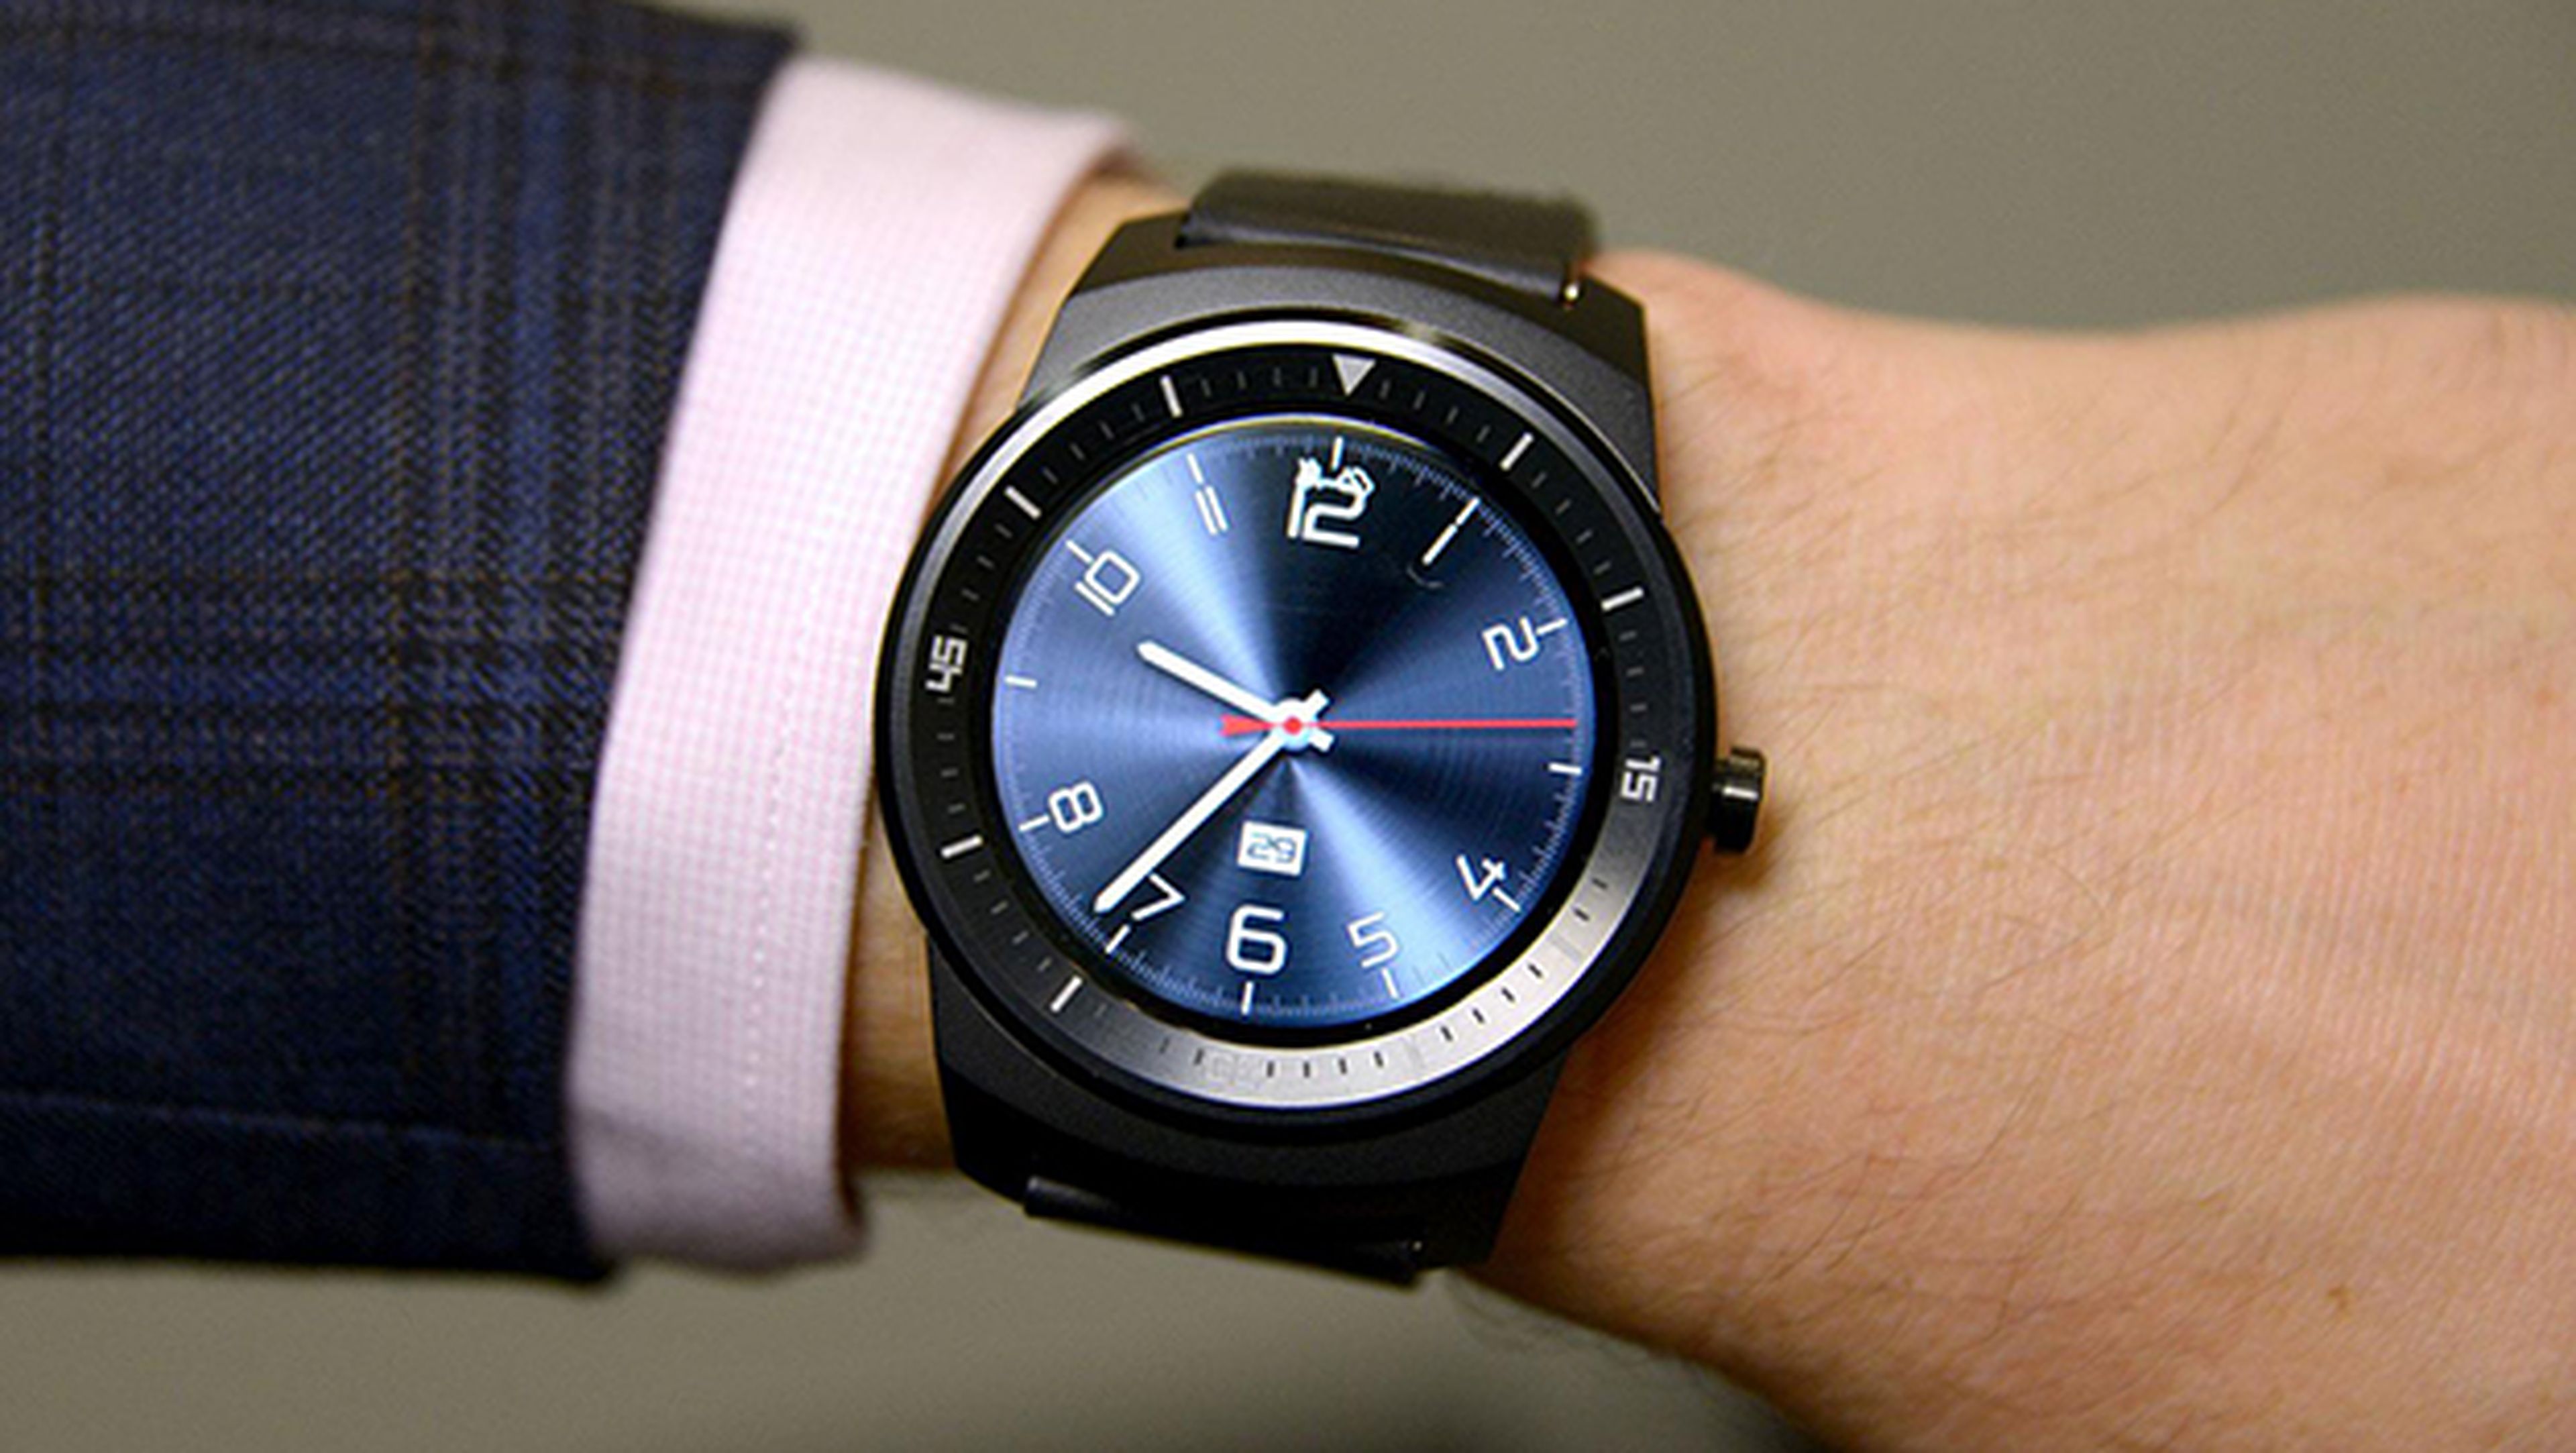 LG prepara un nuevo smartwatch con Android 2.0